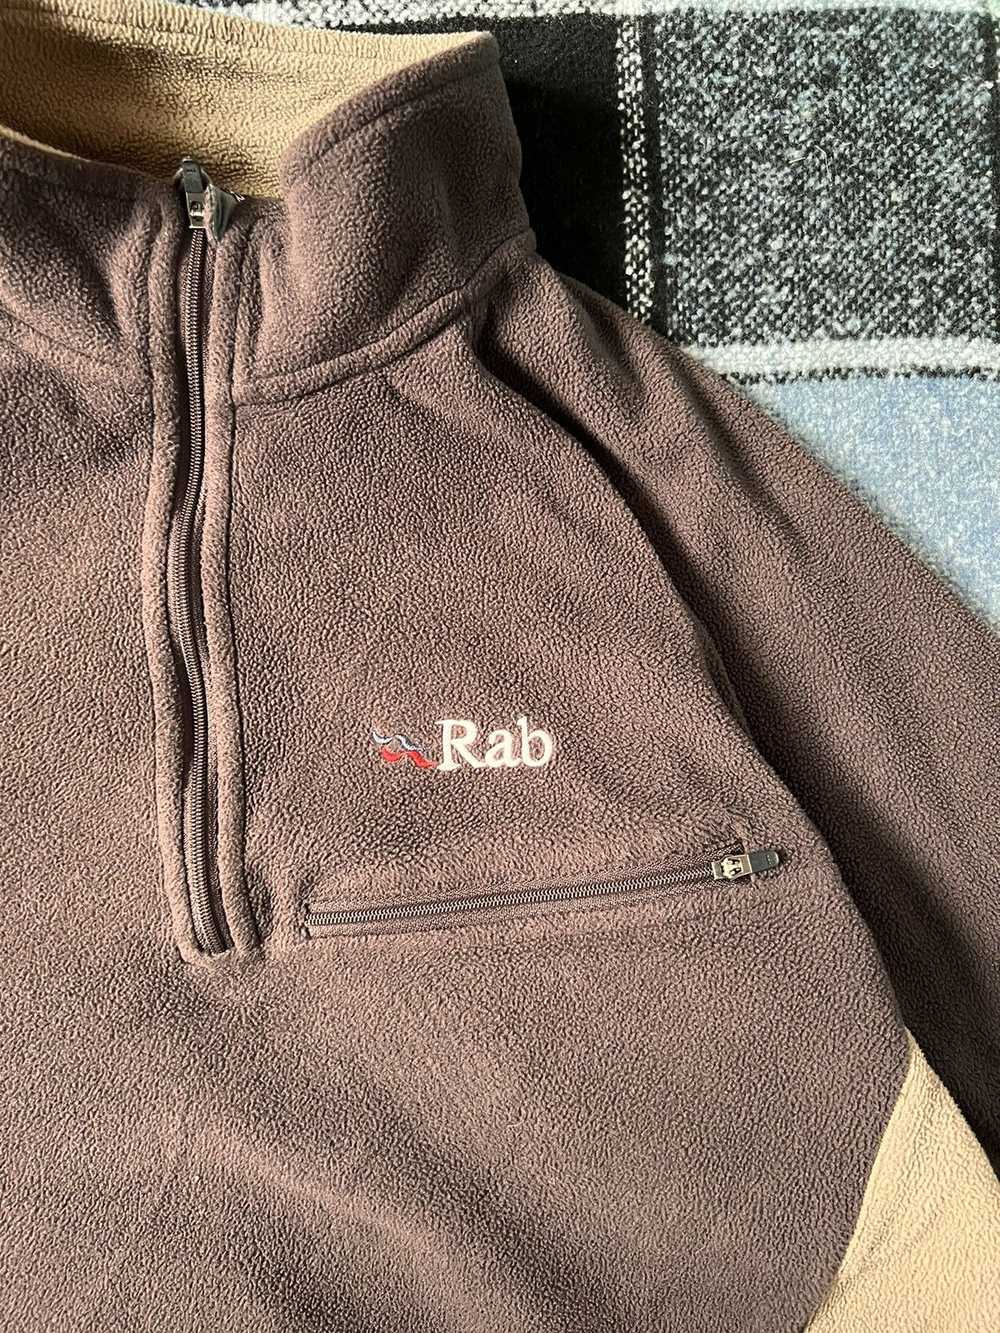 Rab Fleece jacket Rab - image 2